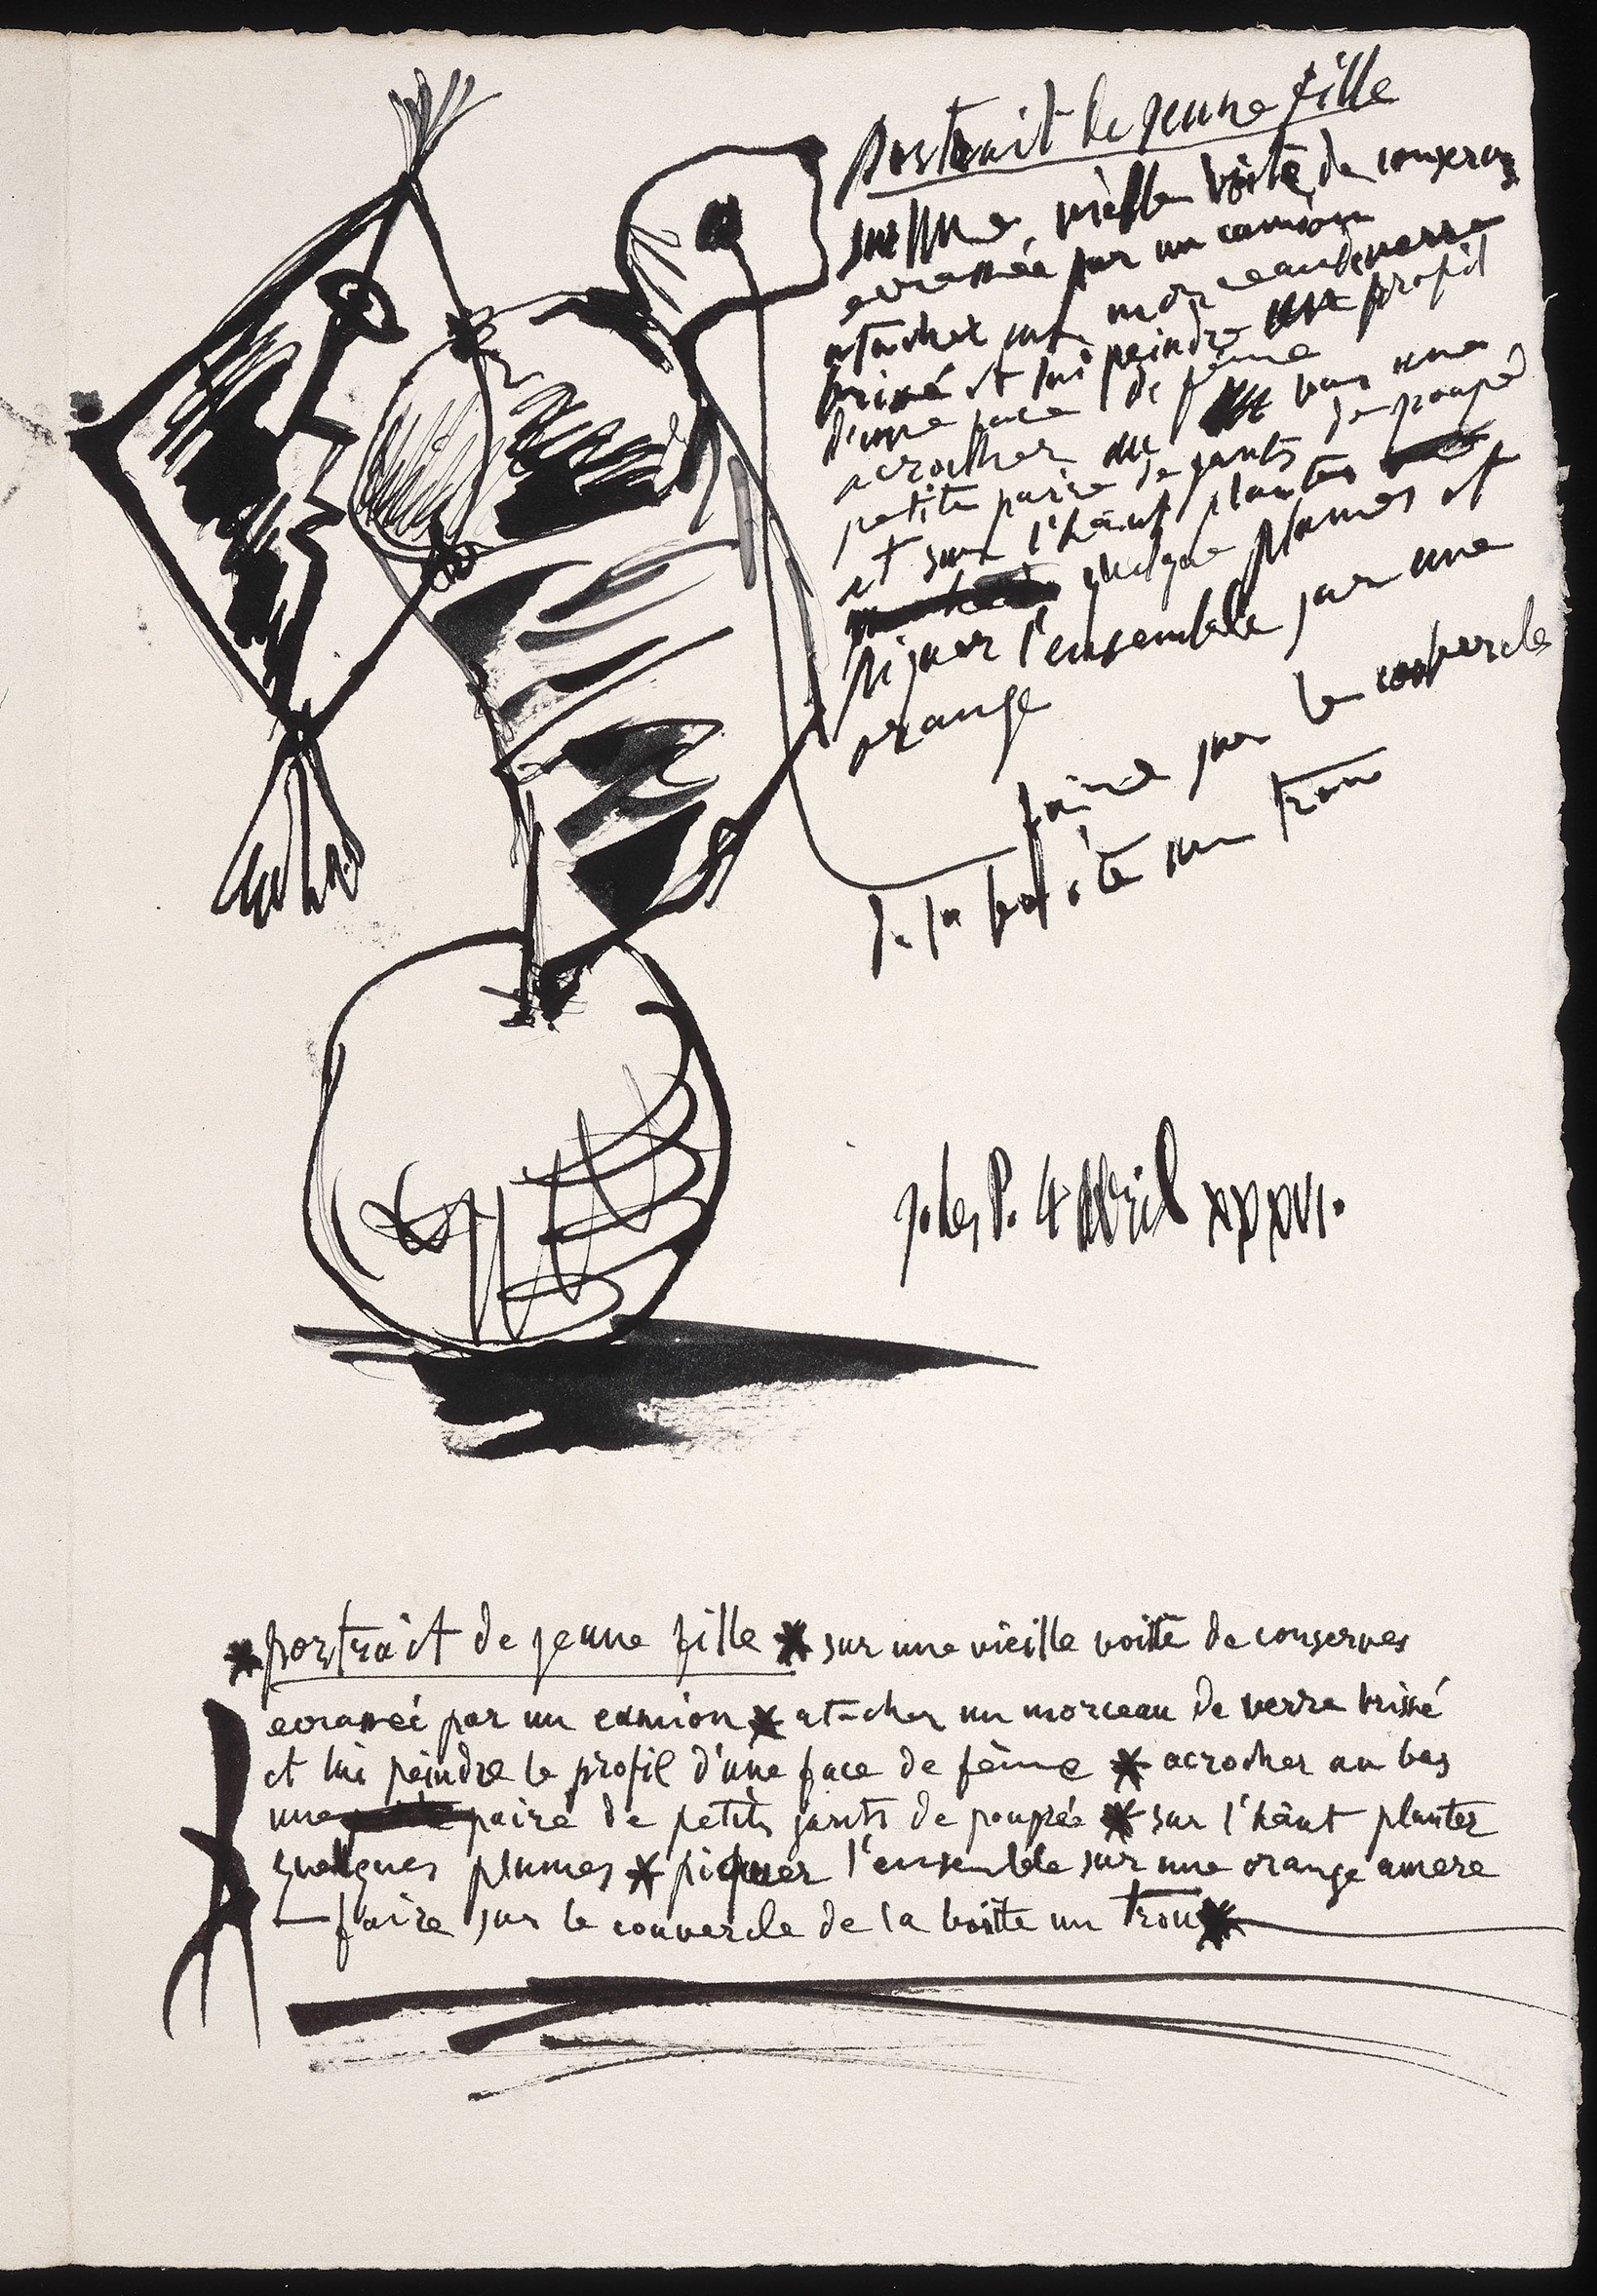 Picasso - Portrait de jeune fille sur une vieille boîte de conserve et poème en français sur ce thème -  MP1150(v) - 93-003698